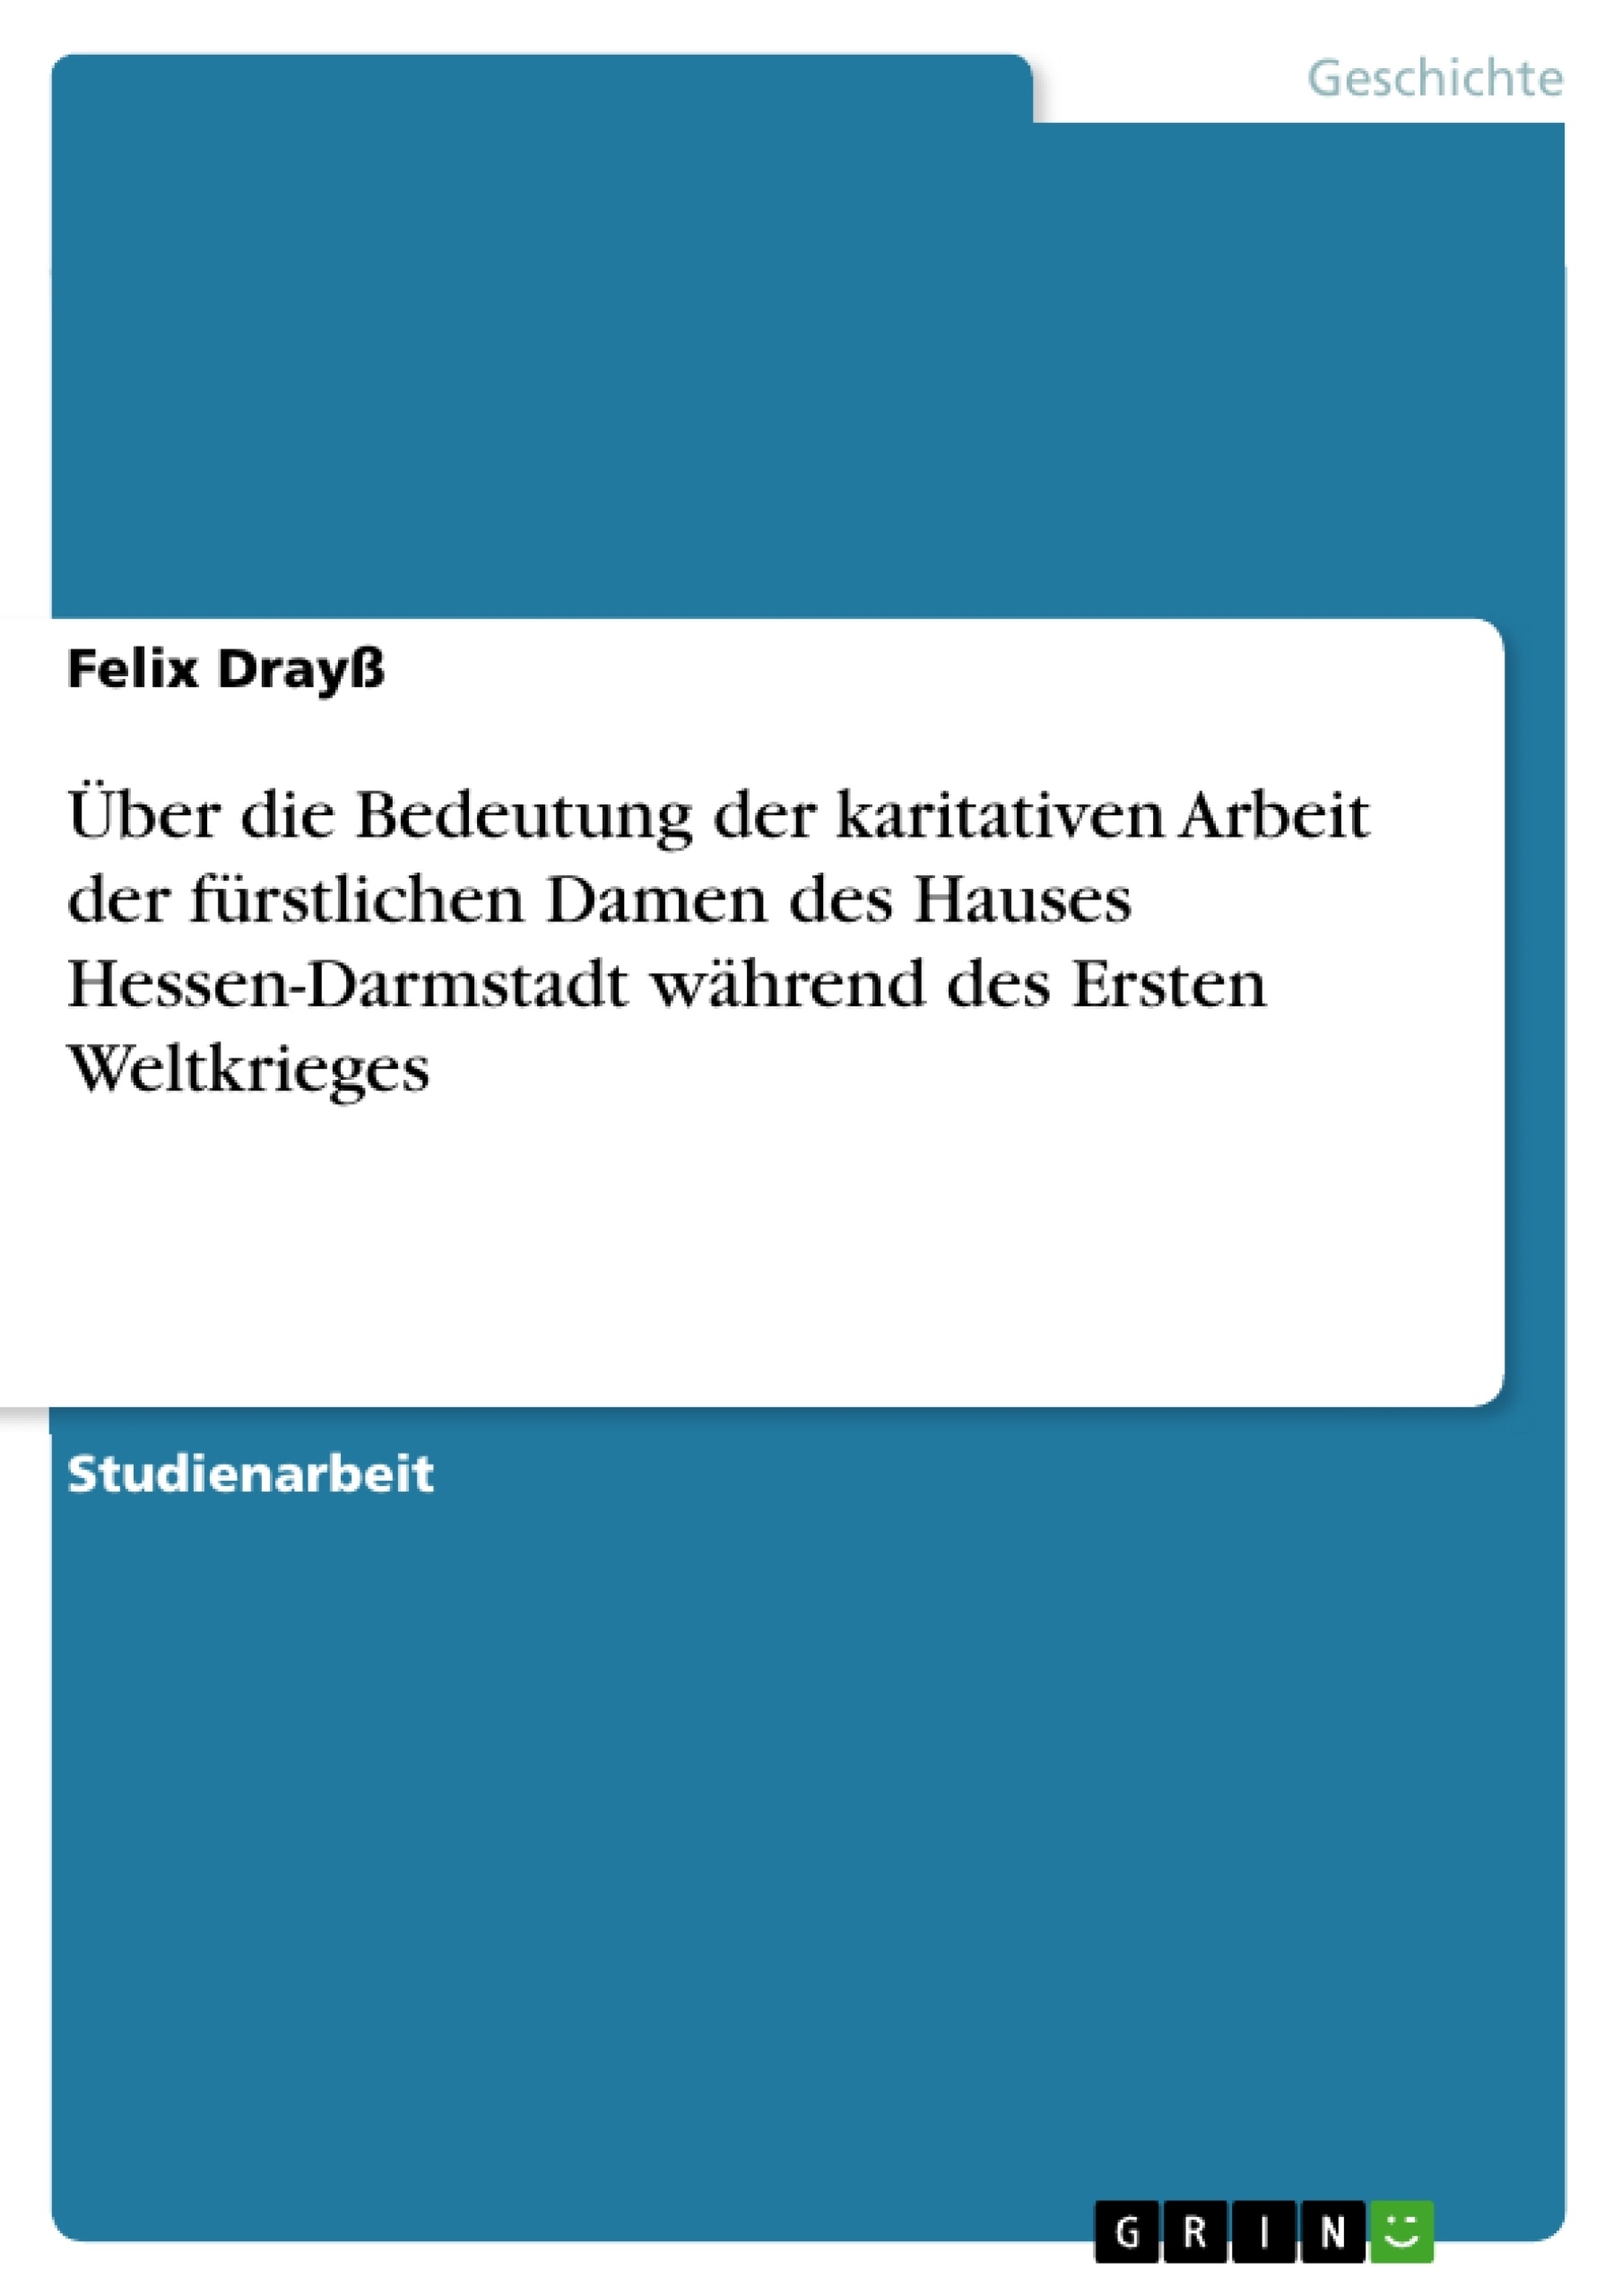 Titre: Über die Bedeutung der karitativen Arbeit der fürstlichen Damen des Hauses Hessen-Darmstadt während des Ersten Weltkrieges